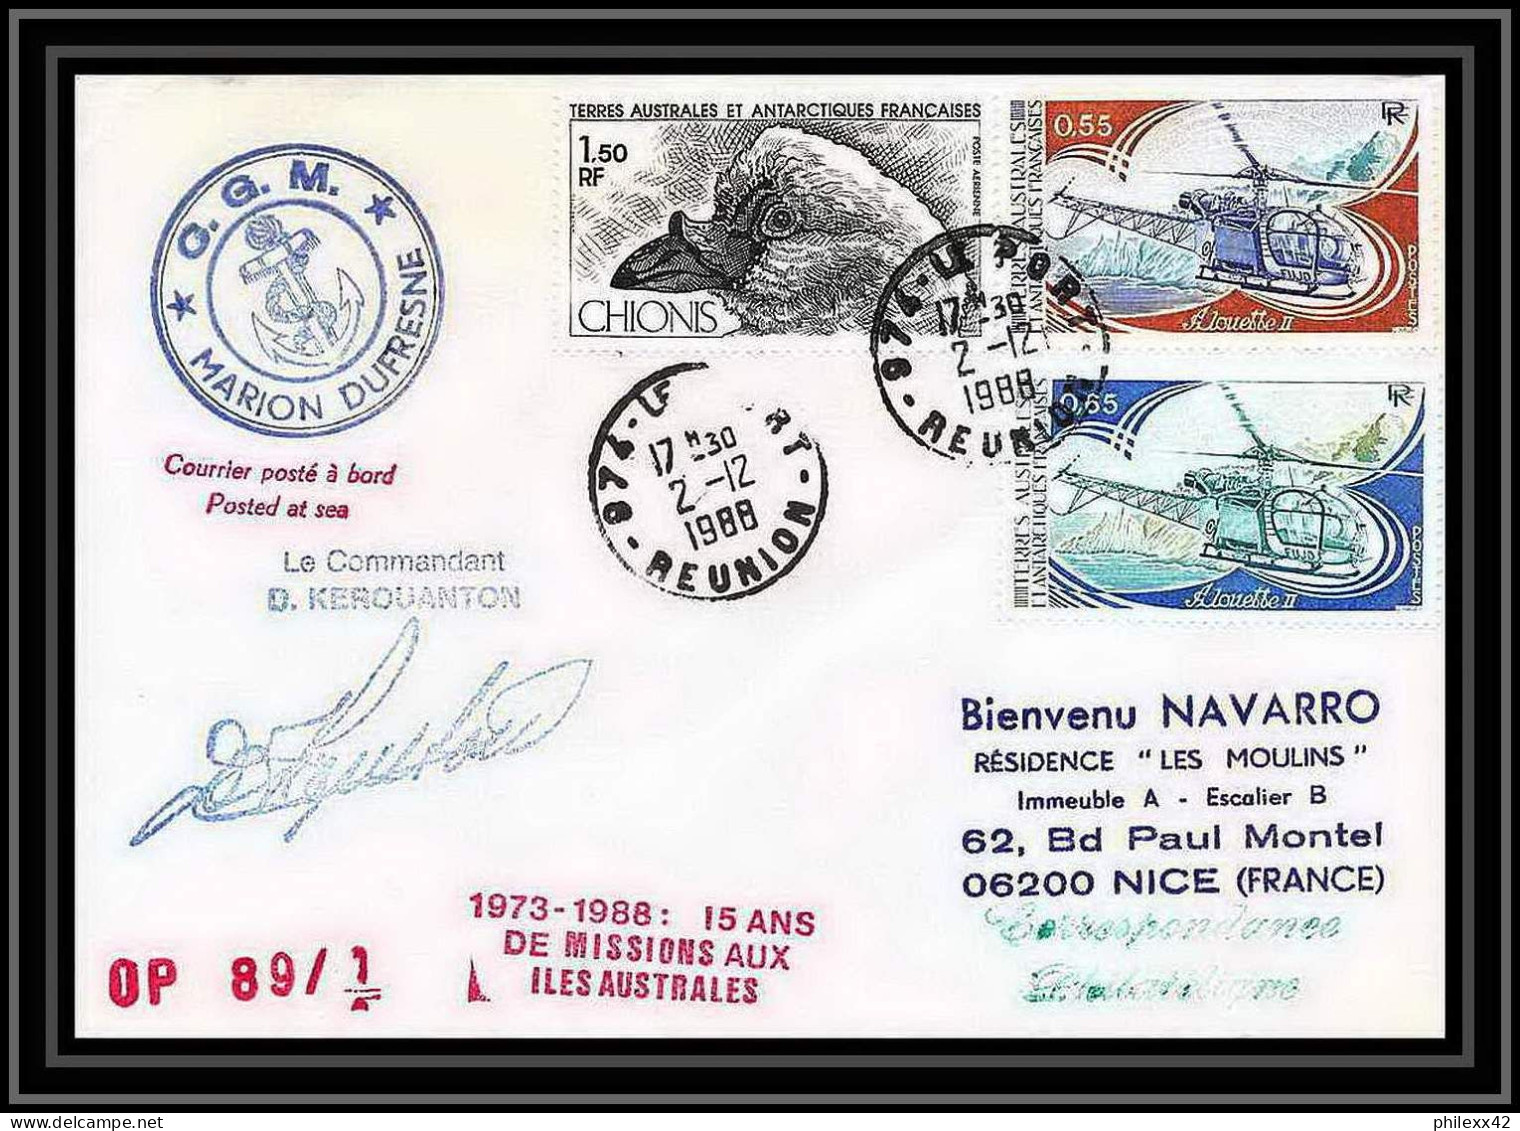 1581 89/2--2/12/1988 Marion Dufresne Signé Signed Kerouanton TAAF Antarctic Terres Australes Lettre (cover) - Antarctische Expedities